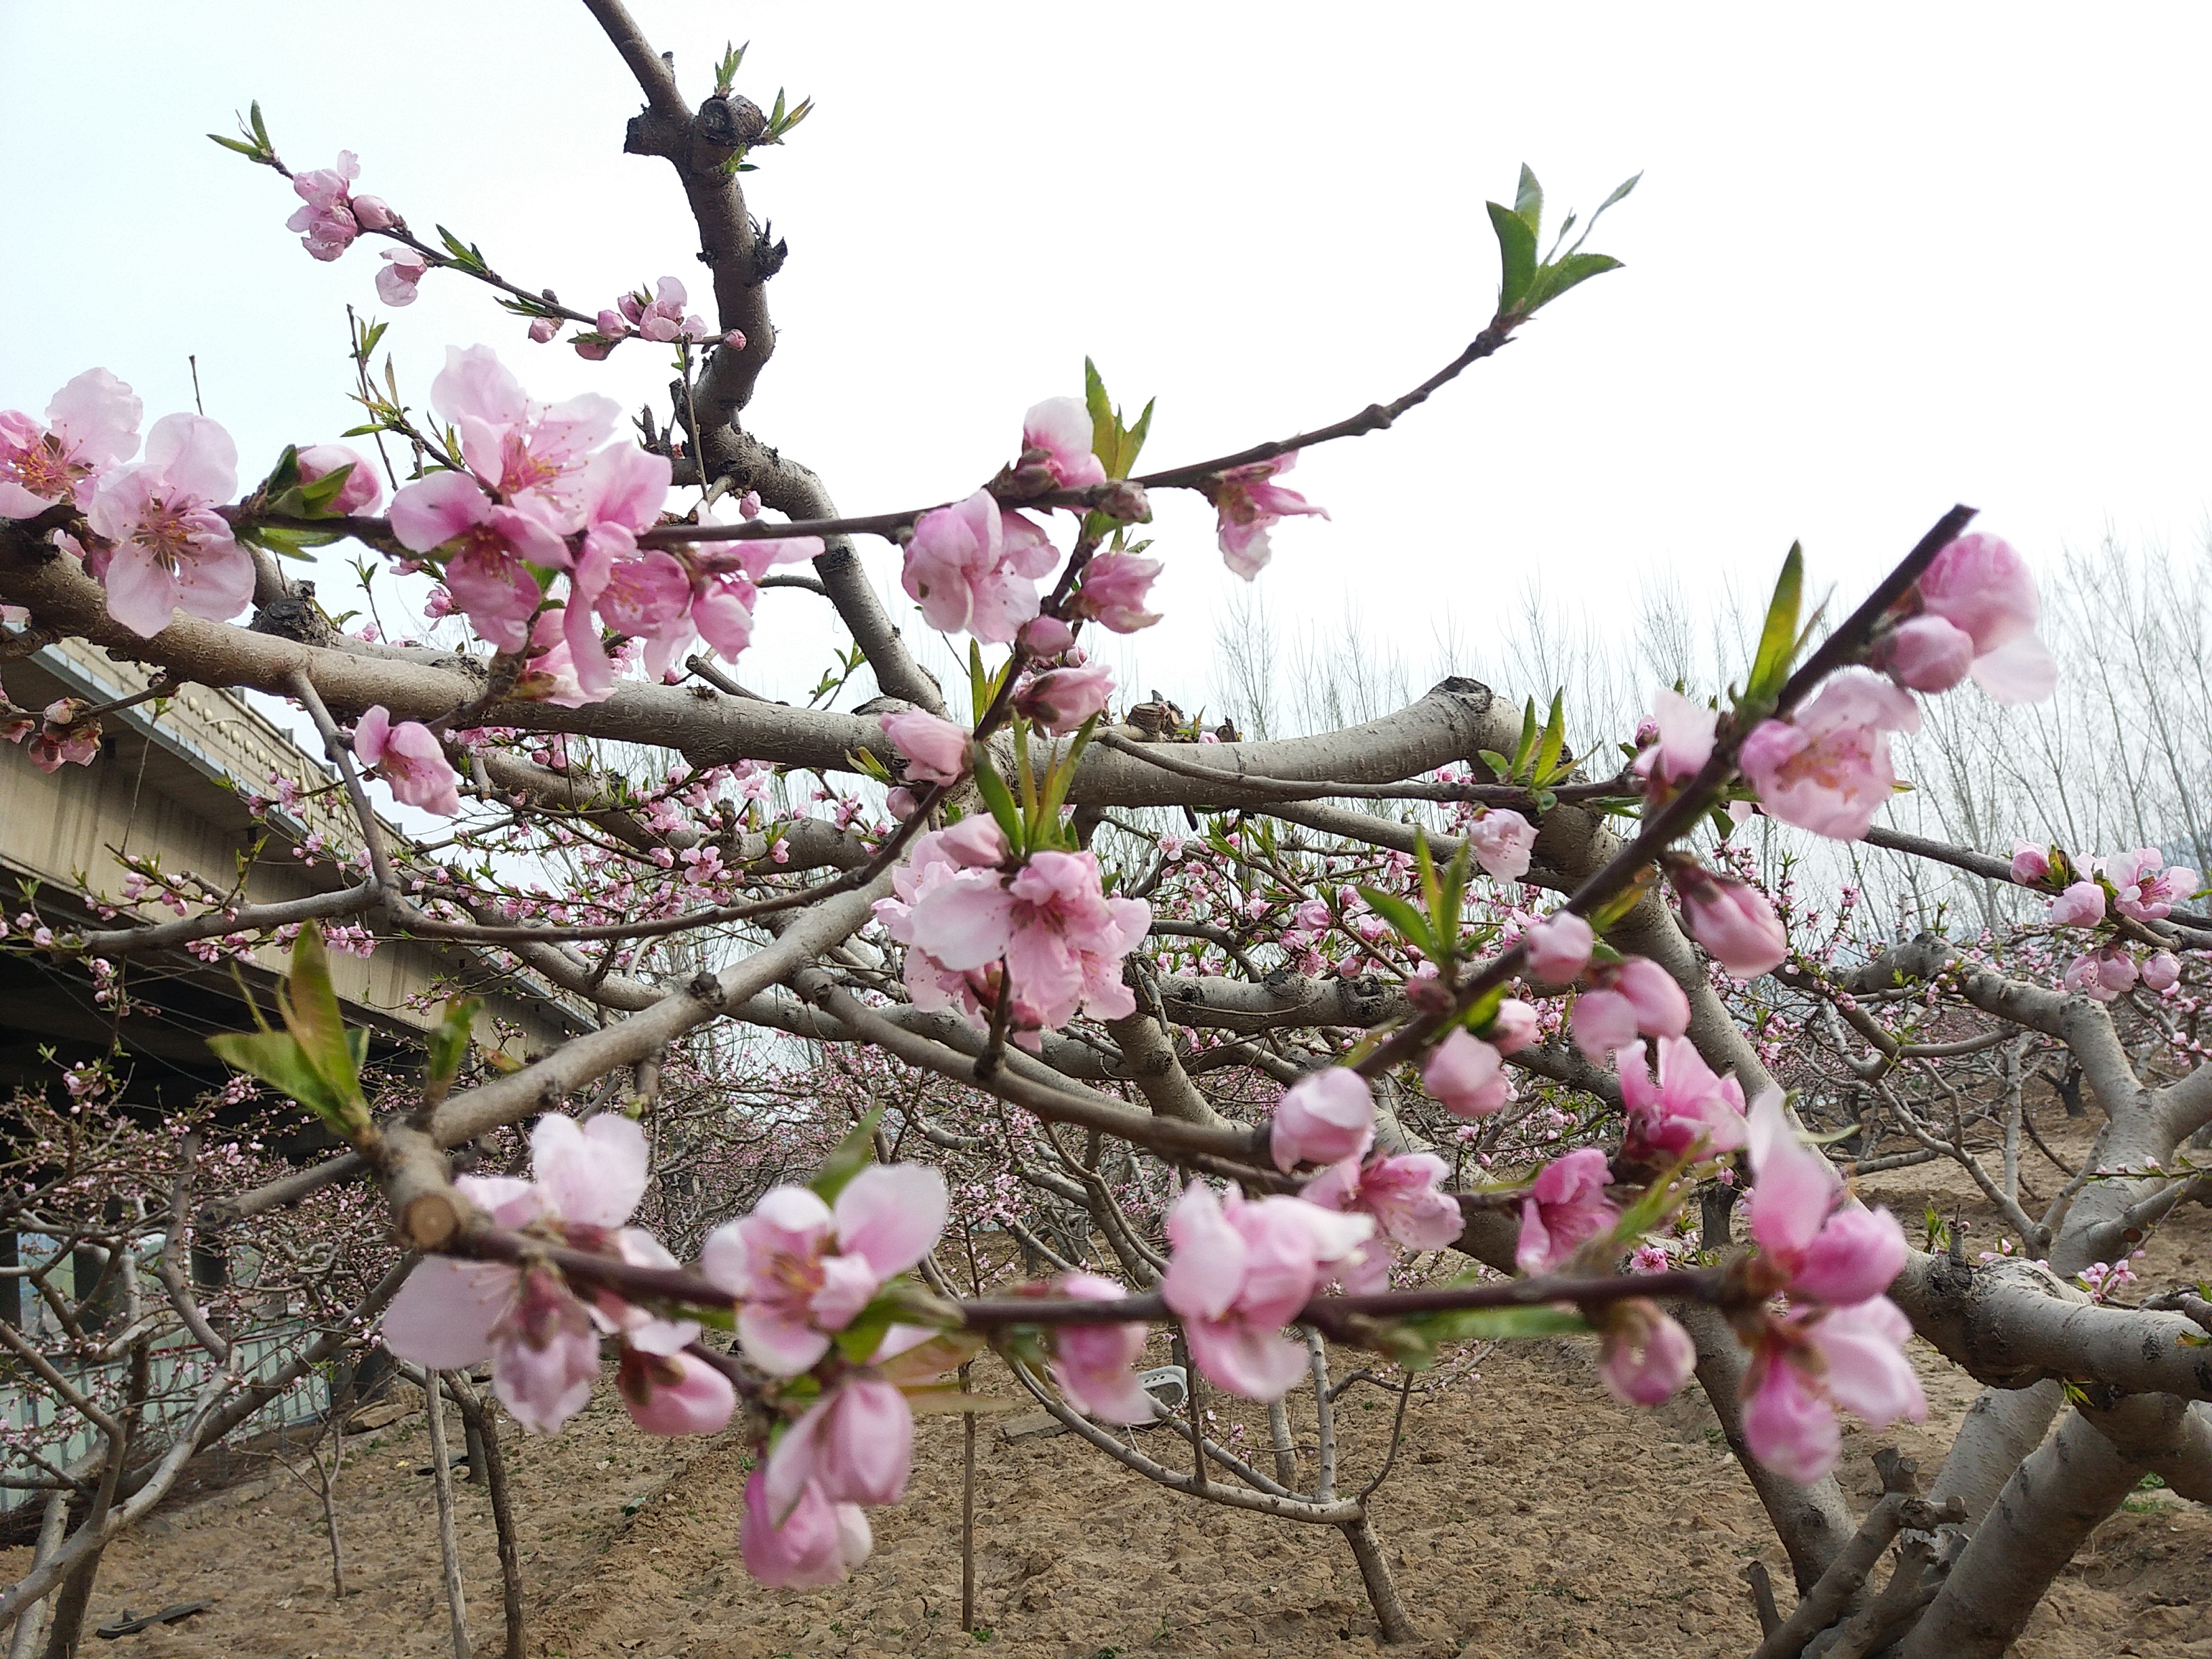 工地旁边的一片桃树,桃花盛开一片美景